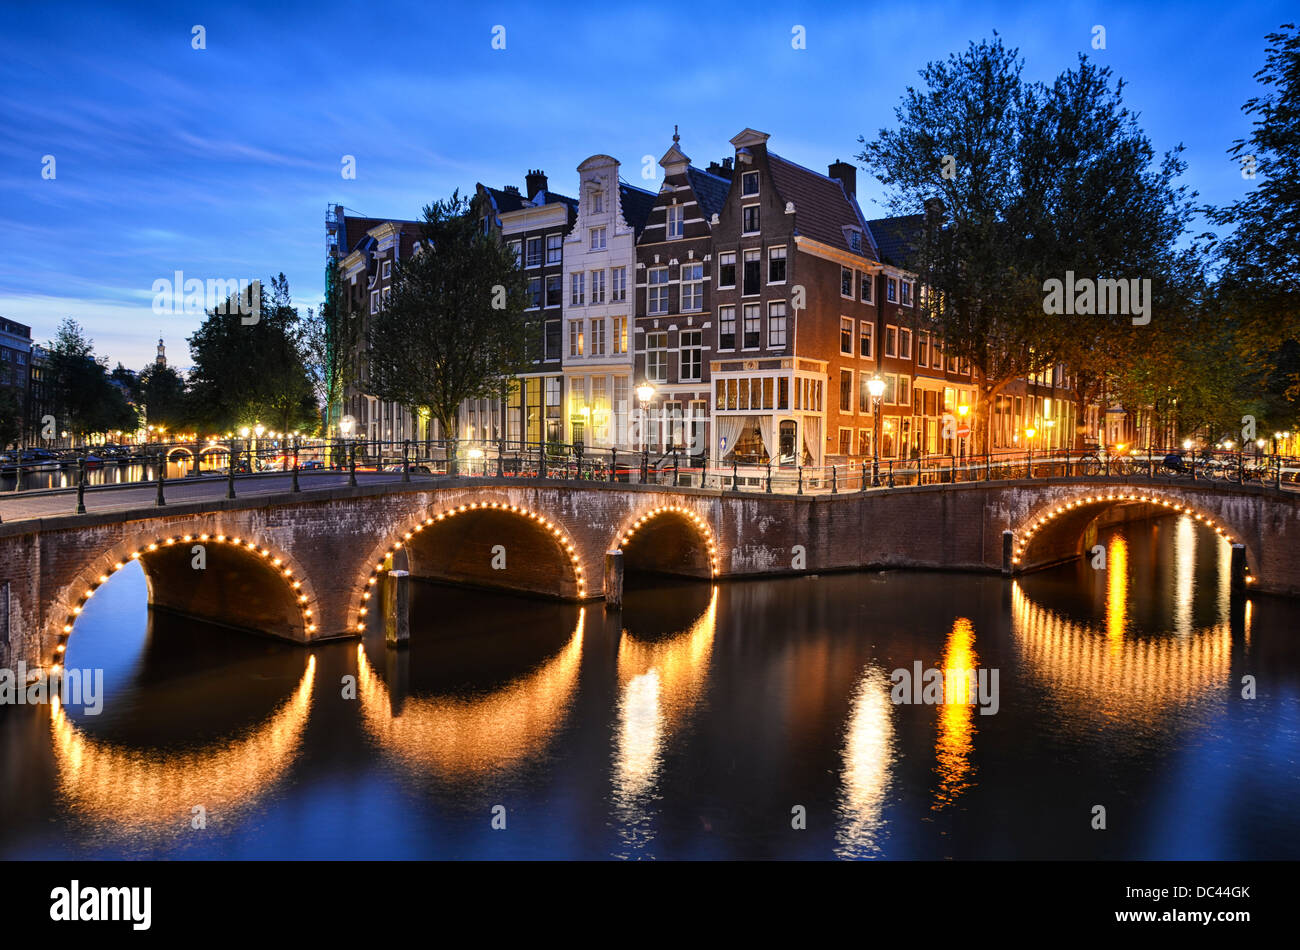 Scena notturna in corrispondenza di un canale che mostra case tradizionali e un ponte di arco in Amsterdam, Paesi Bassi Foto Stock